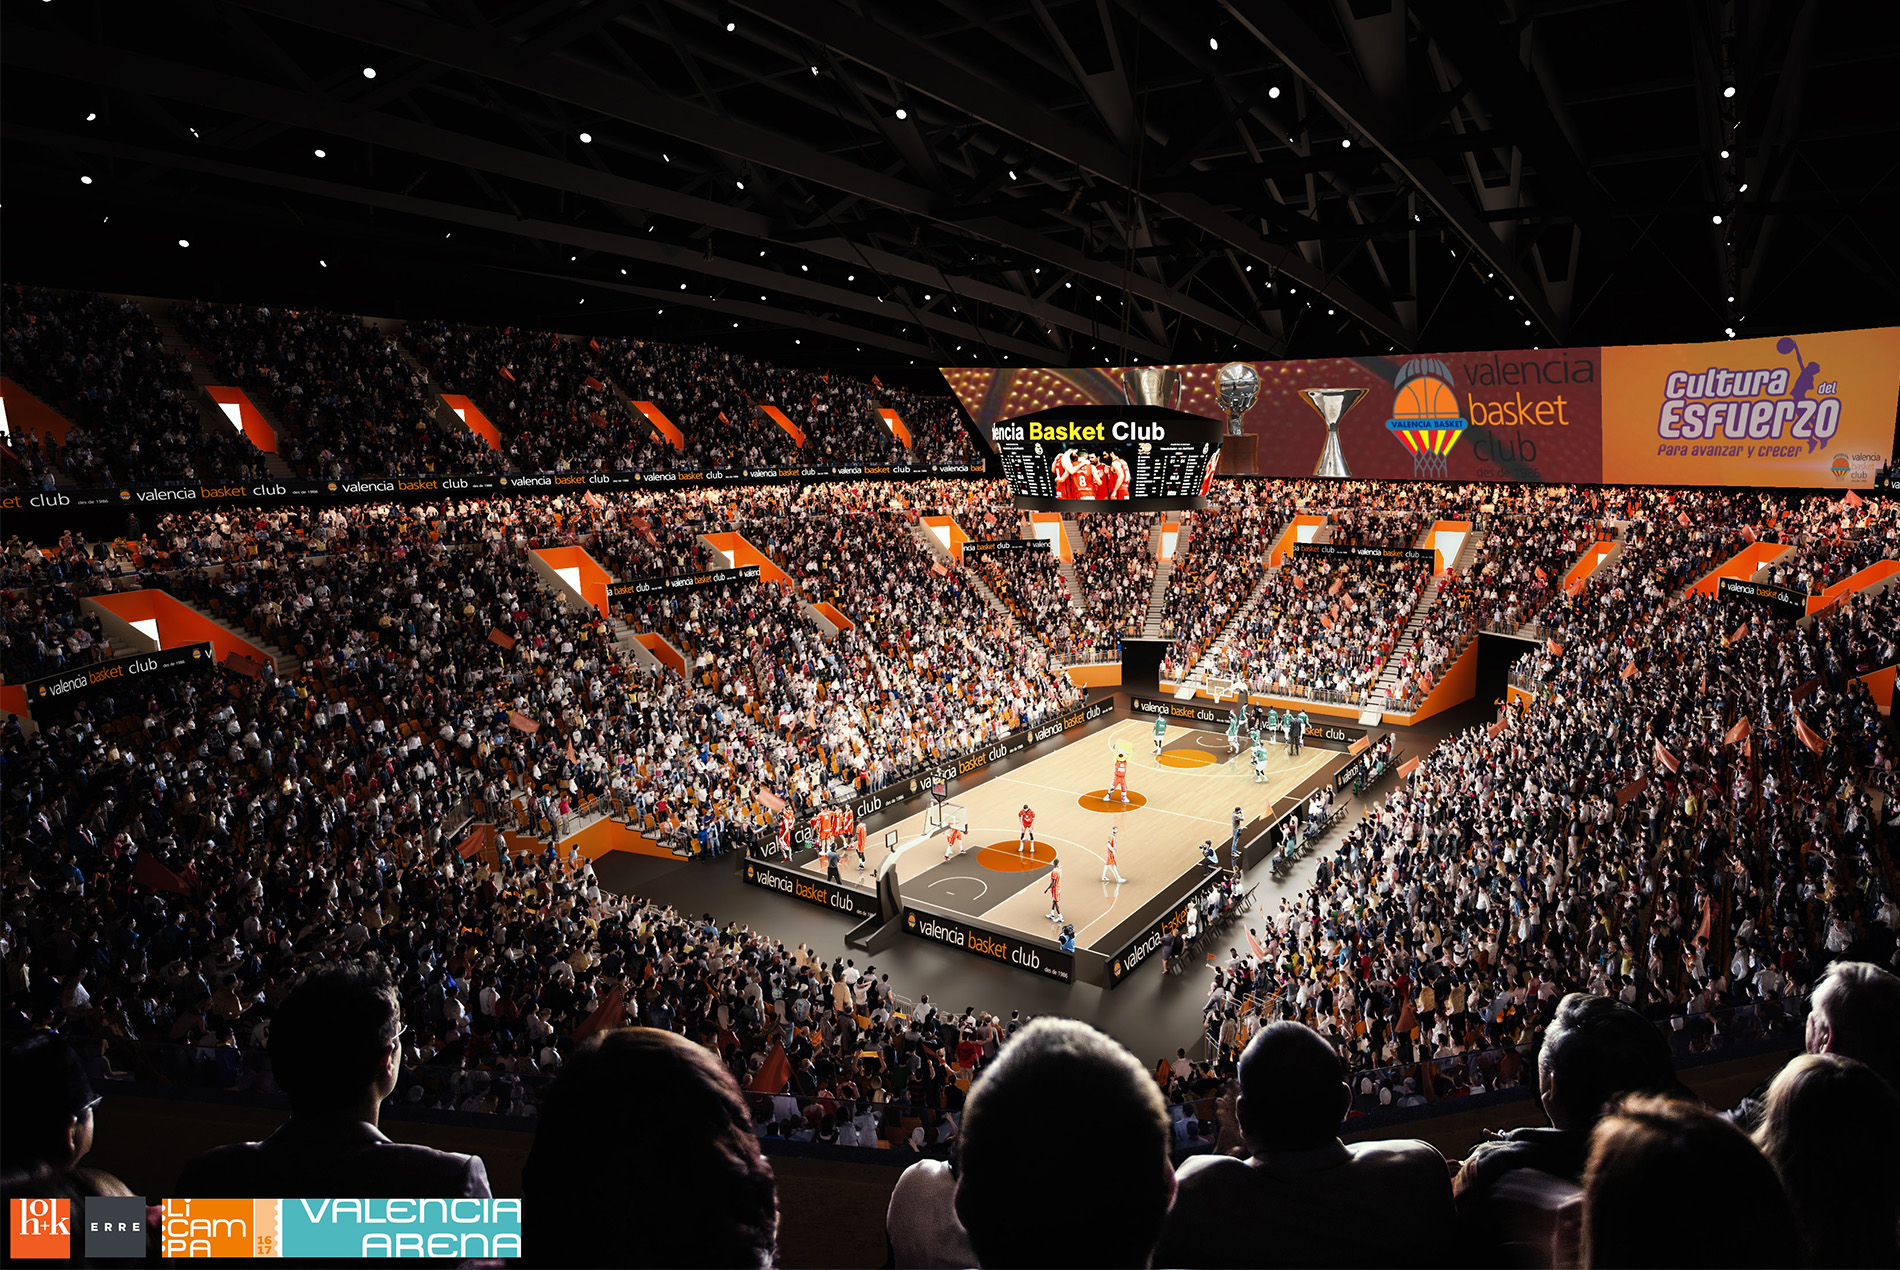 設備先進的 Roig Arena，是歐洲最頂尖的籃球運動中心。